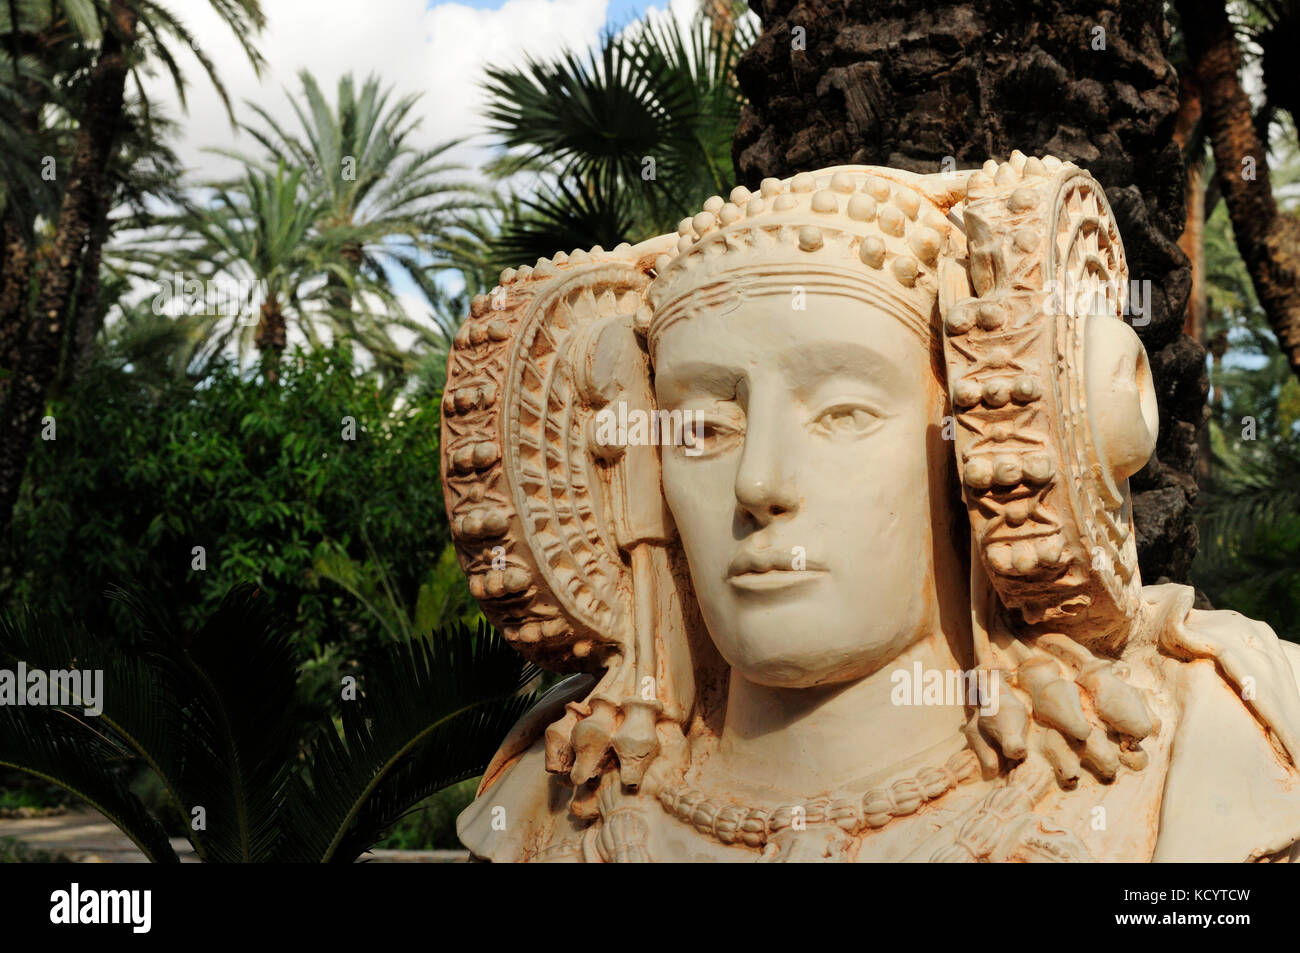 Una copia del busto de la Dama de Elche. Huerto del Cura, Elche, Alicante, España Foto de stock